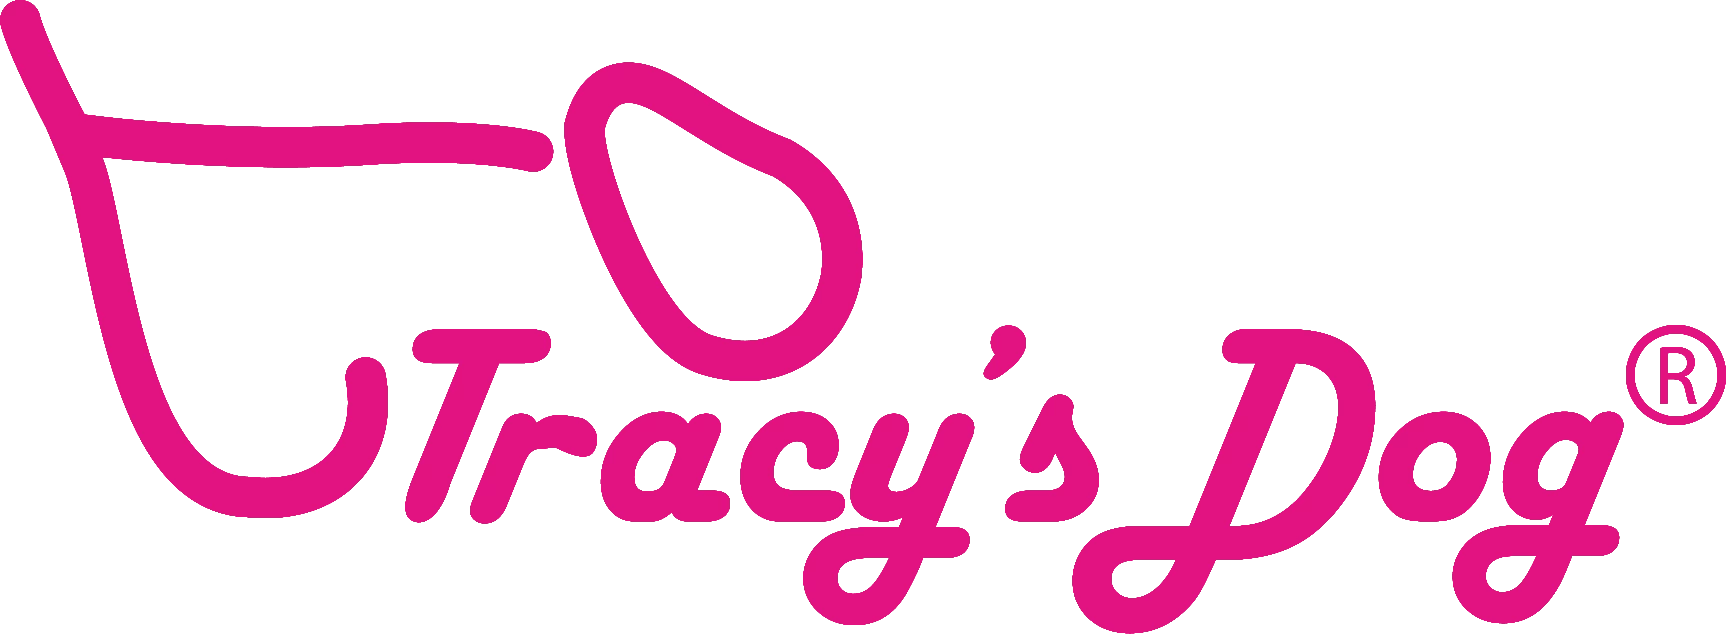 Tracy's Dog®